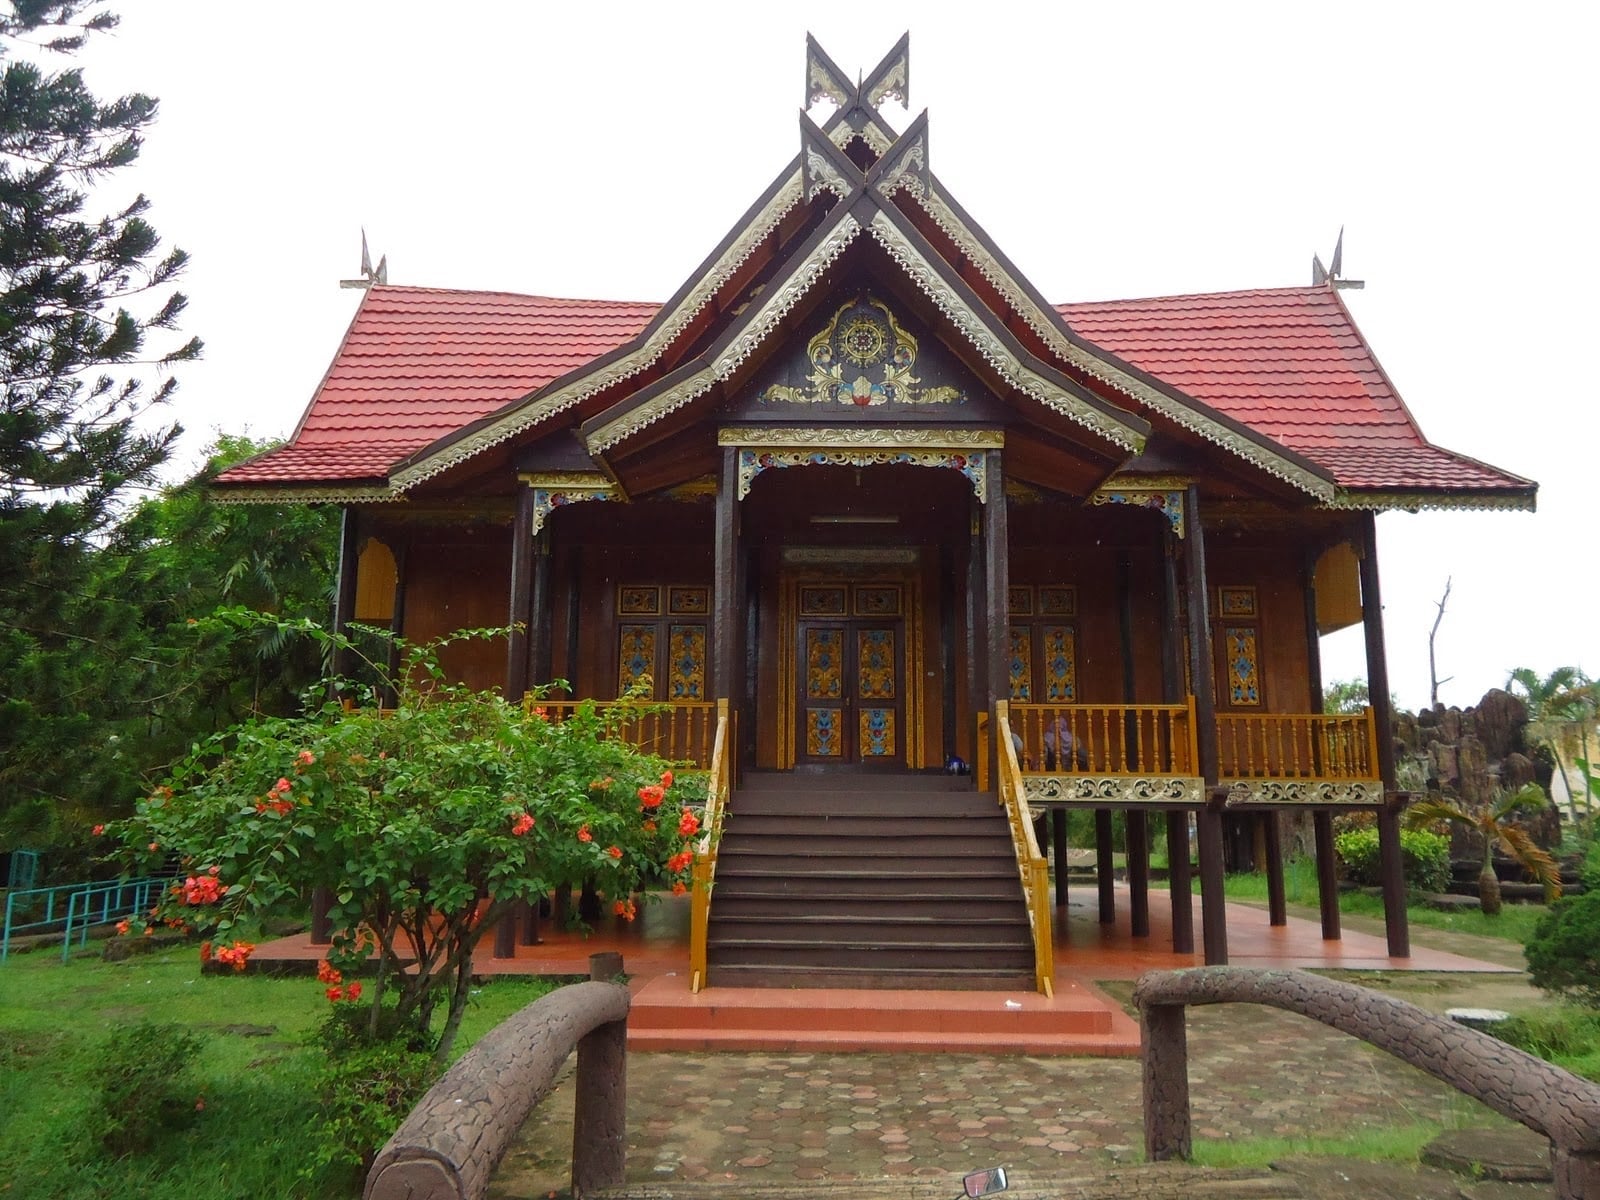 Bagus 21 Gambar Rumah Adat Joglo Yogyakarta 30 Ide Dekorasi Rumah oleh 21 Gambar Rumah Adat Joglo Yogyakarta